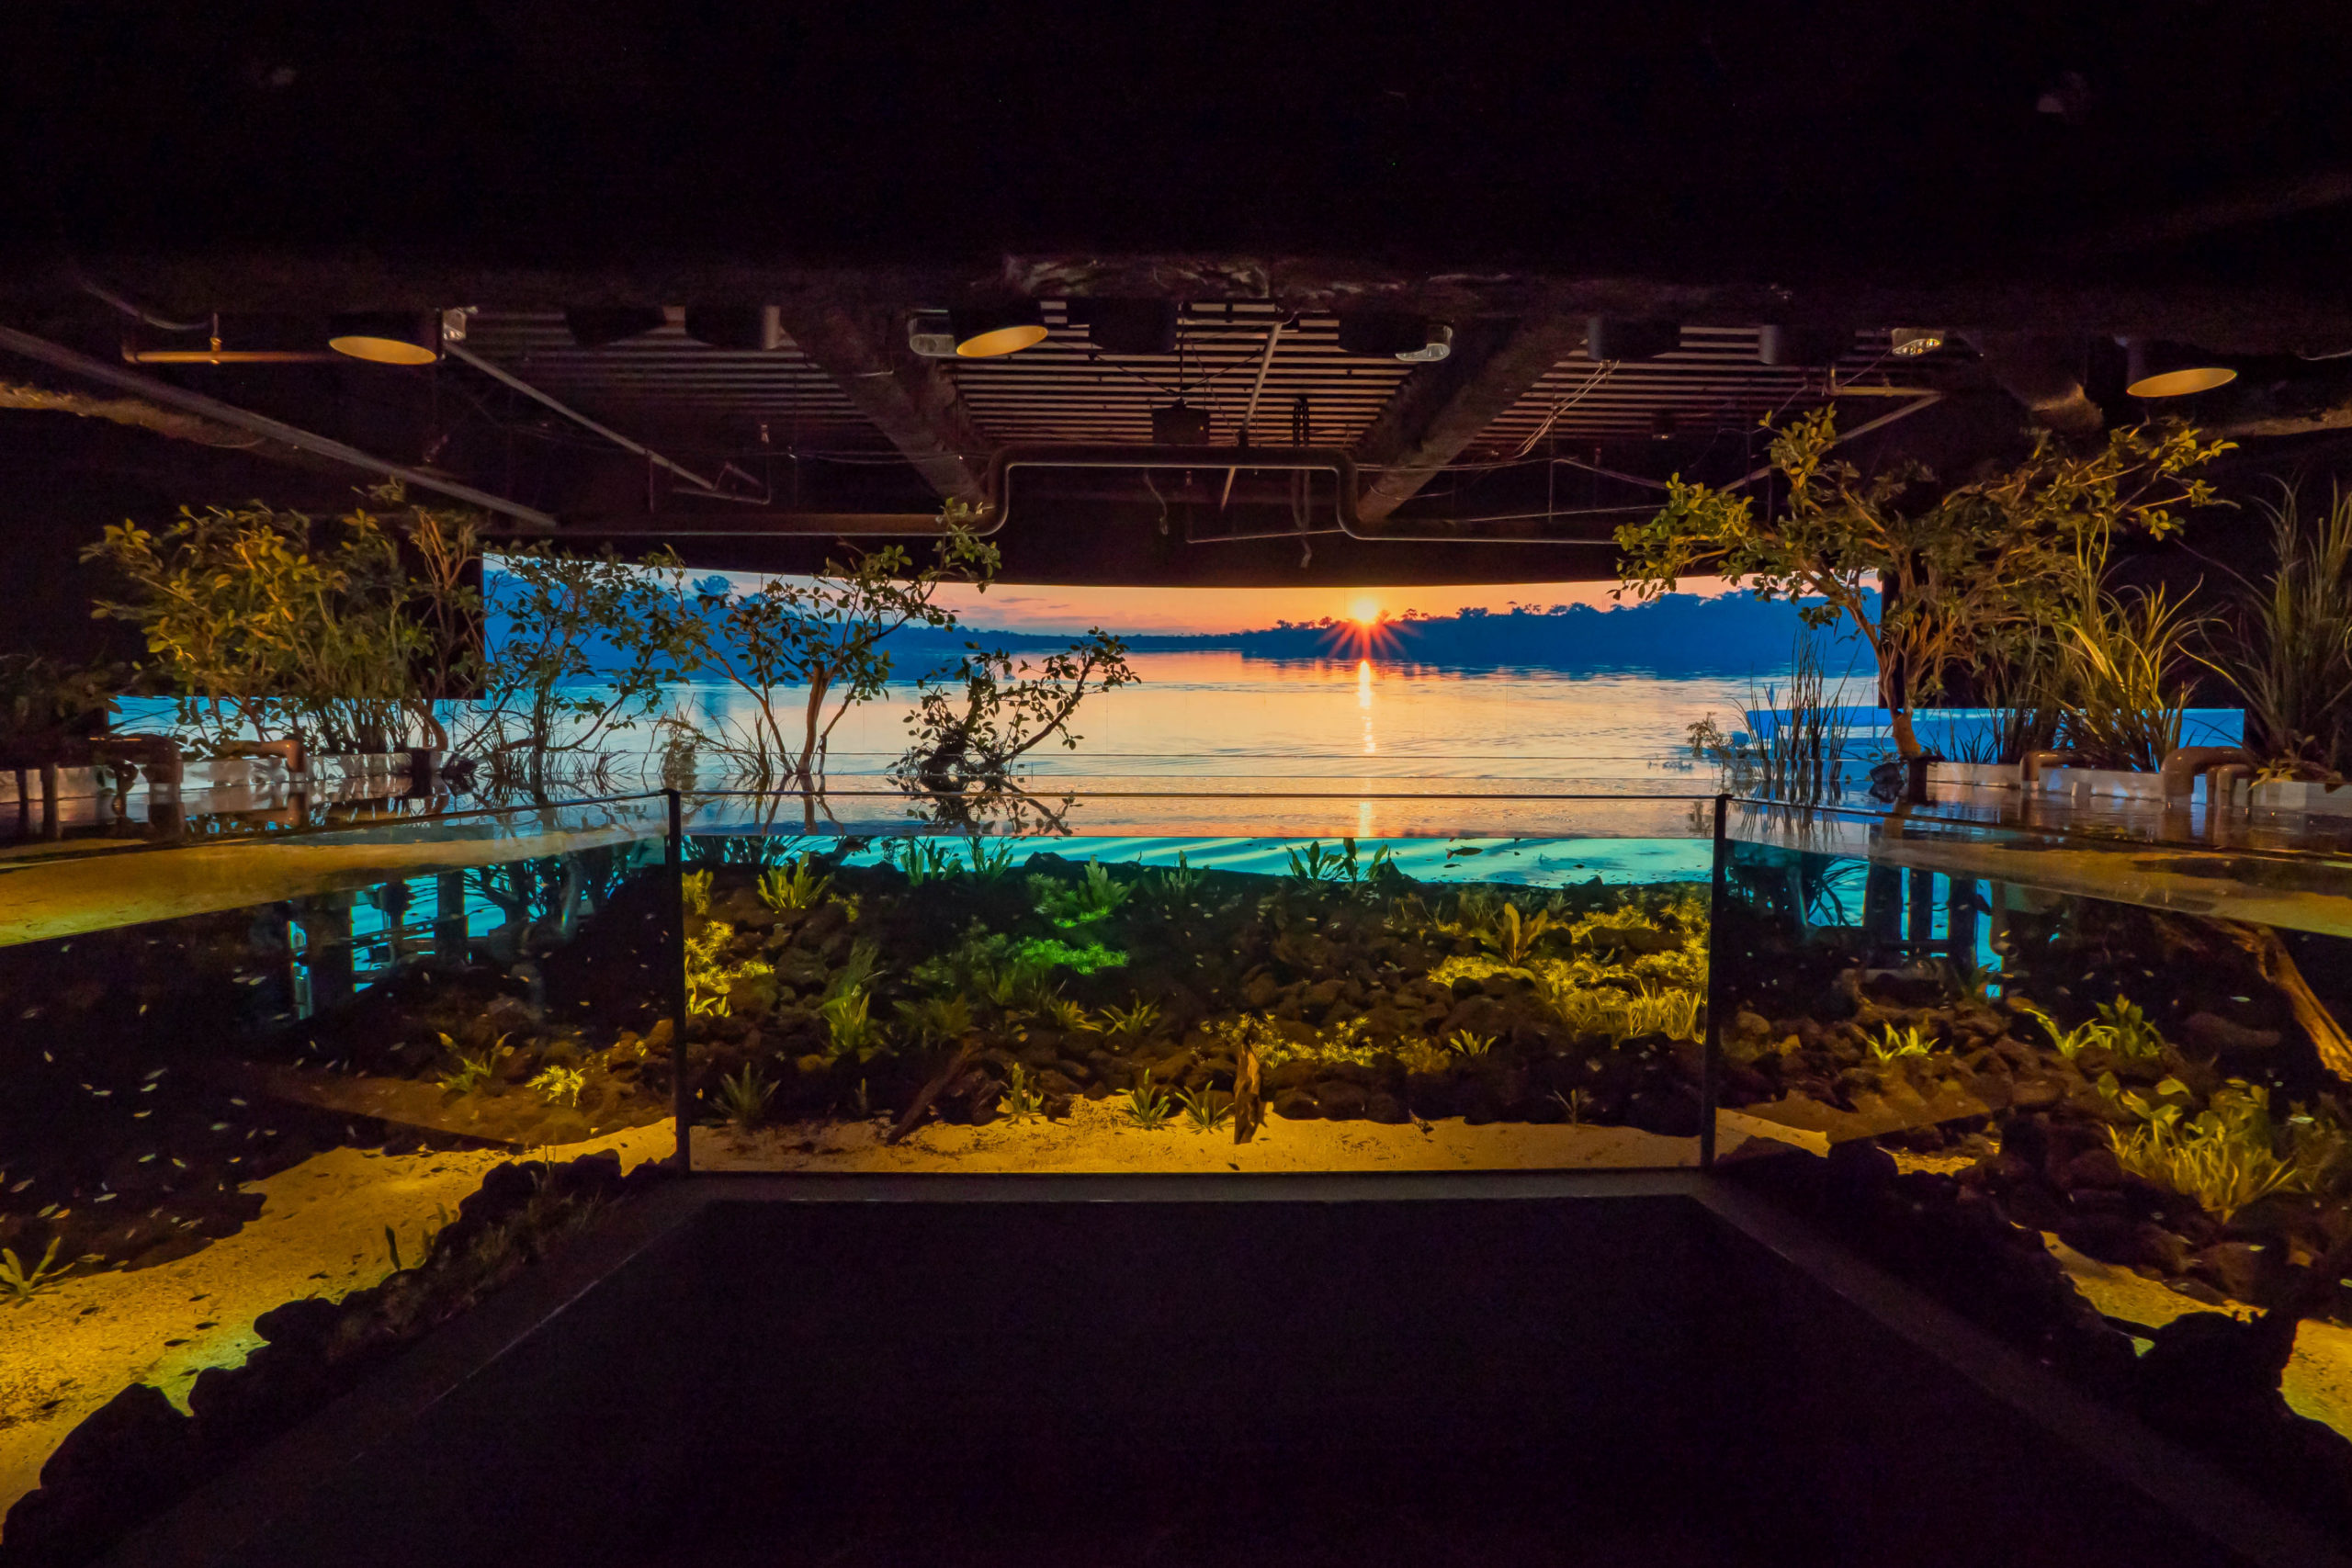 カワスイ,川崎水族館,パンタナルエリア